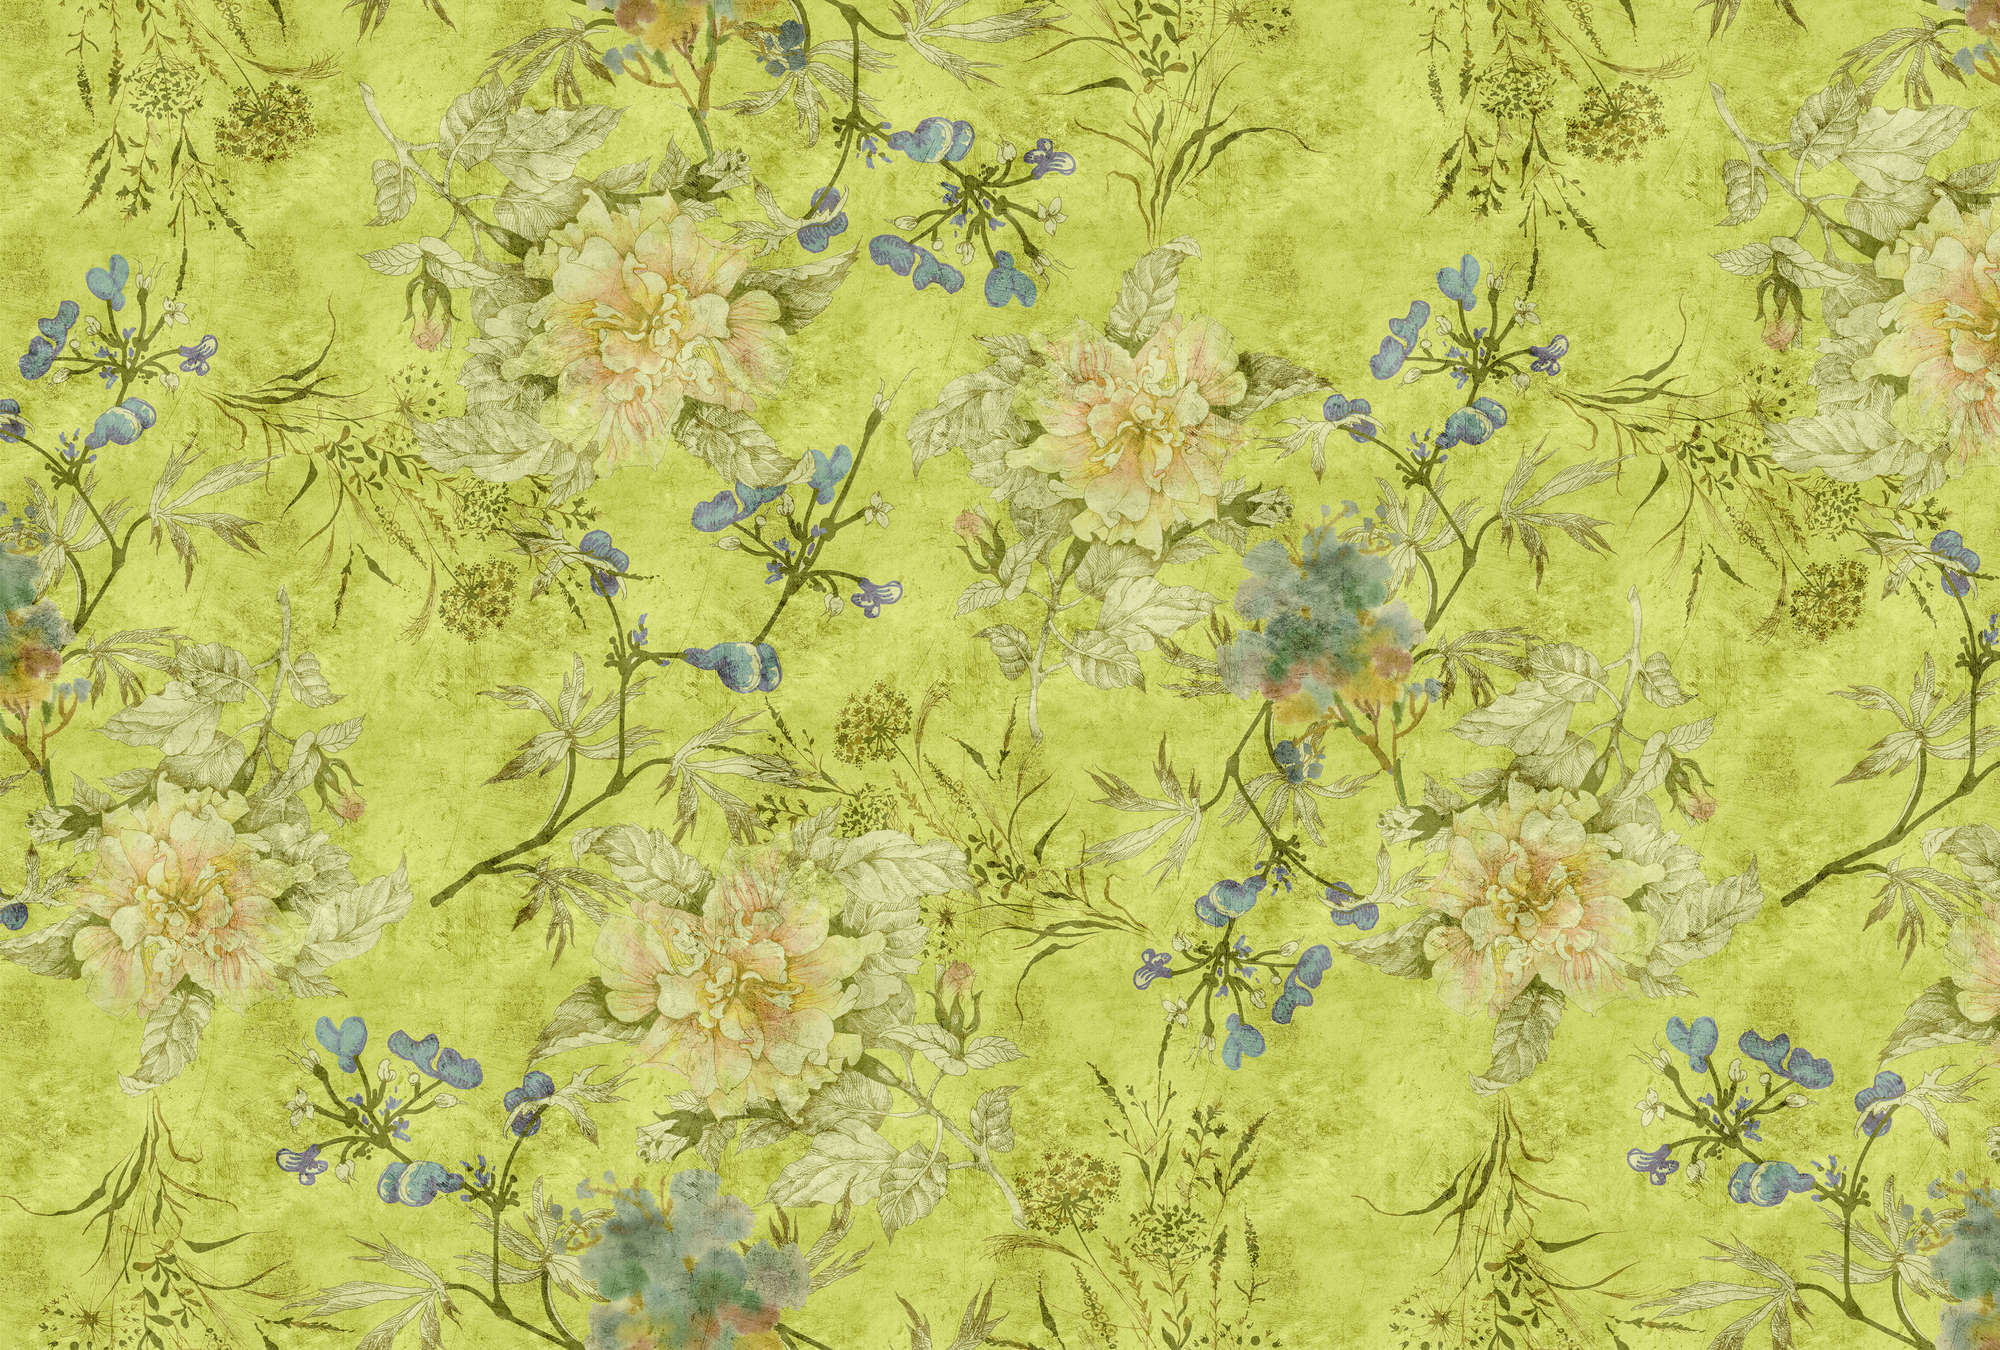             Tenderblossom 1 - Papel pintado fotográfico con zarcillos de flores modernas en una estructura rayada - Verde | Estructura no tejida
        